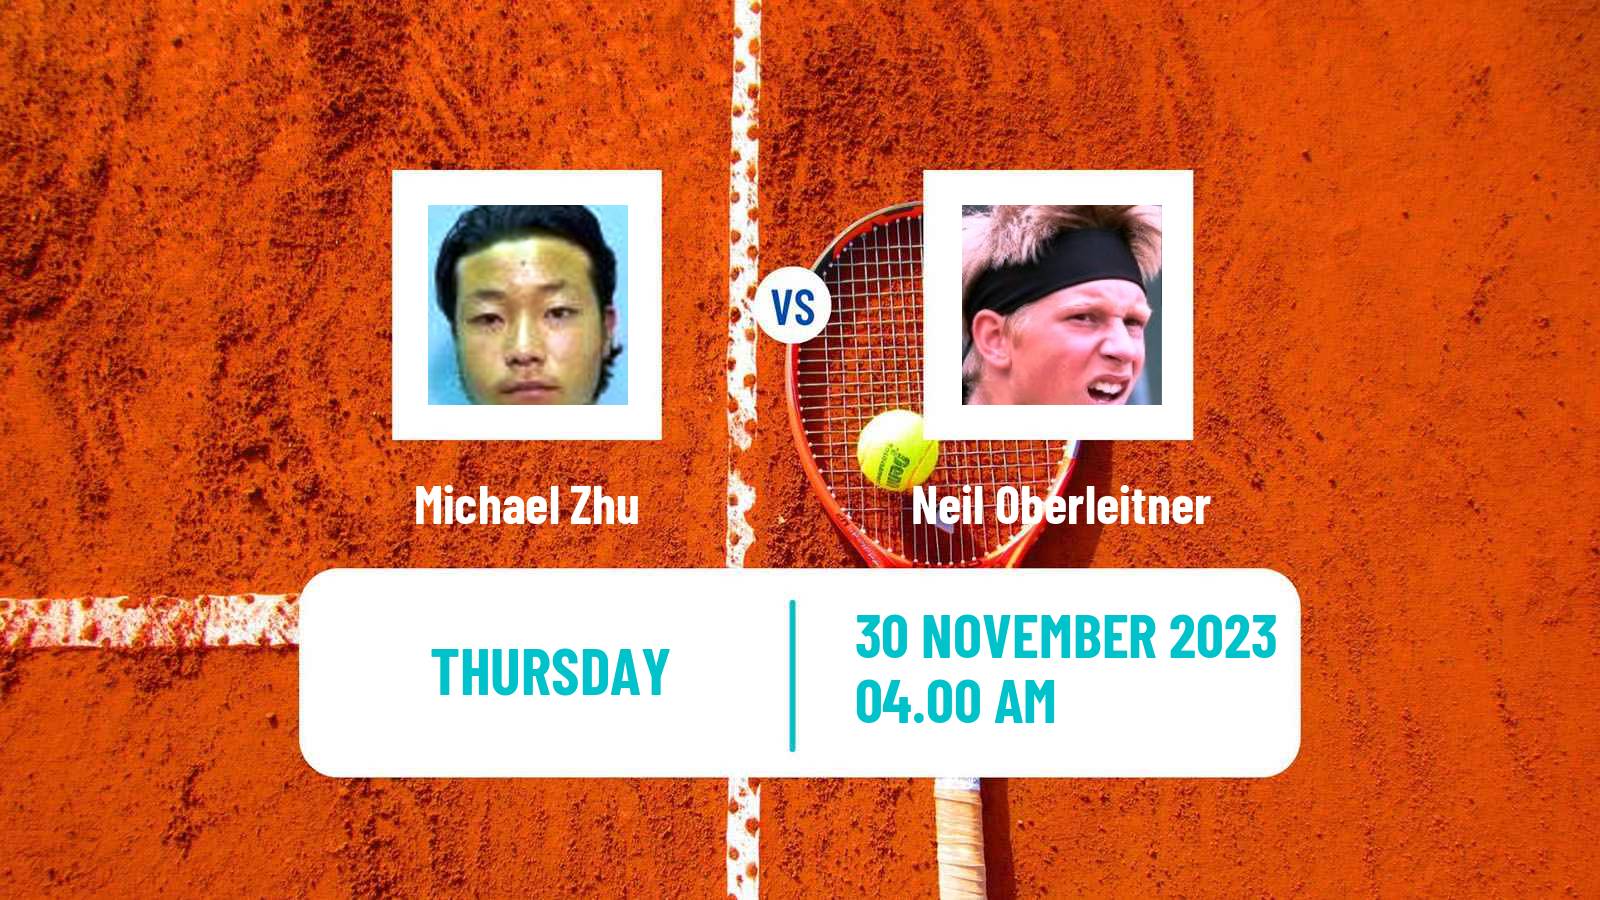 Tennis ITF M25 Heraklion 3 Men Michael Zhu - Neil Oberleitner